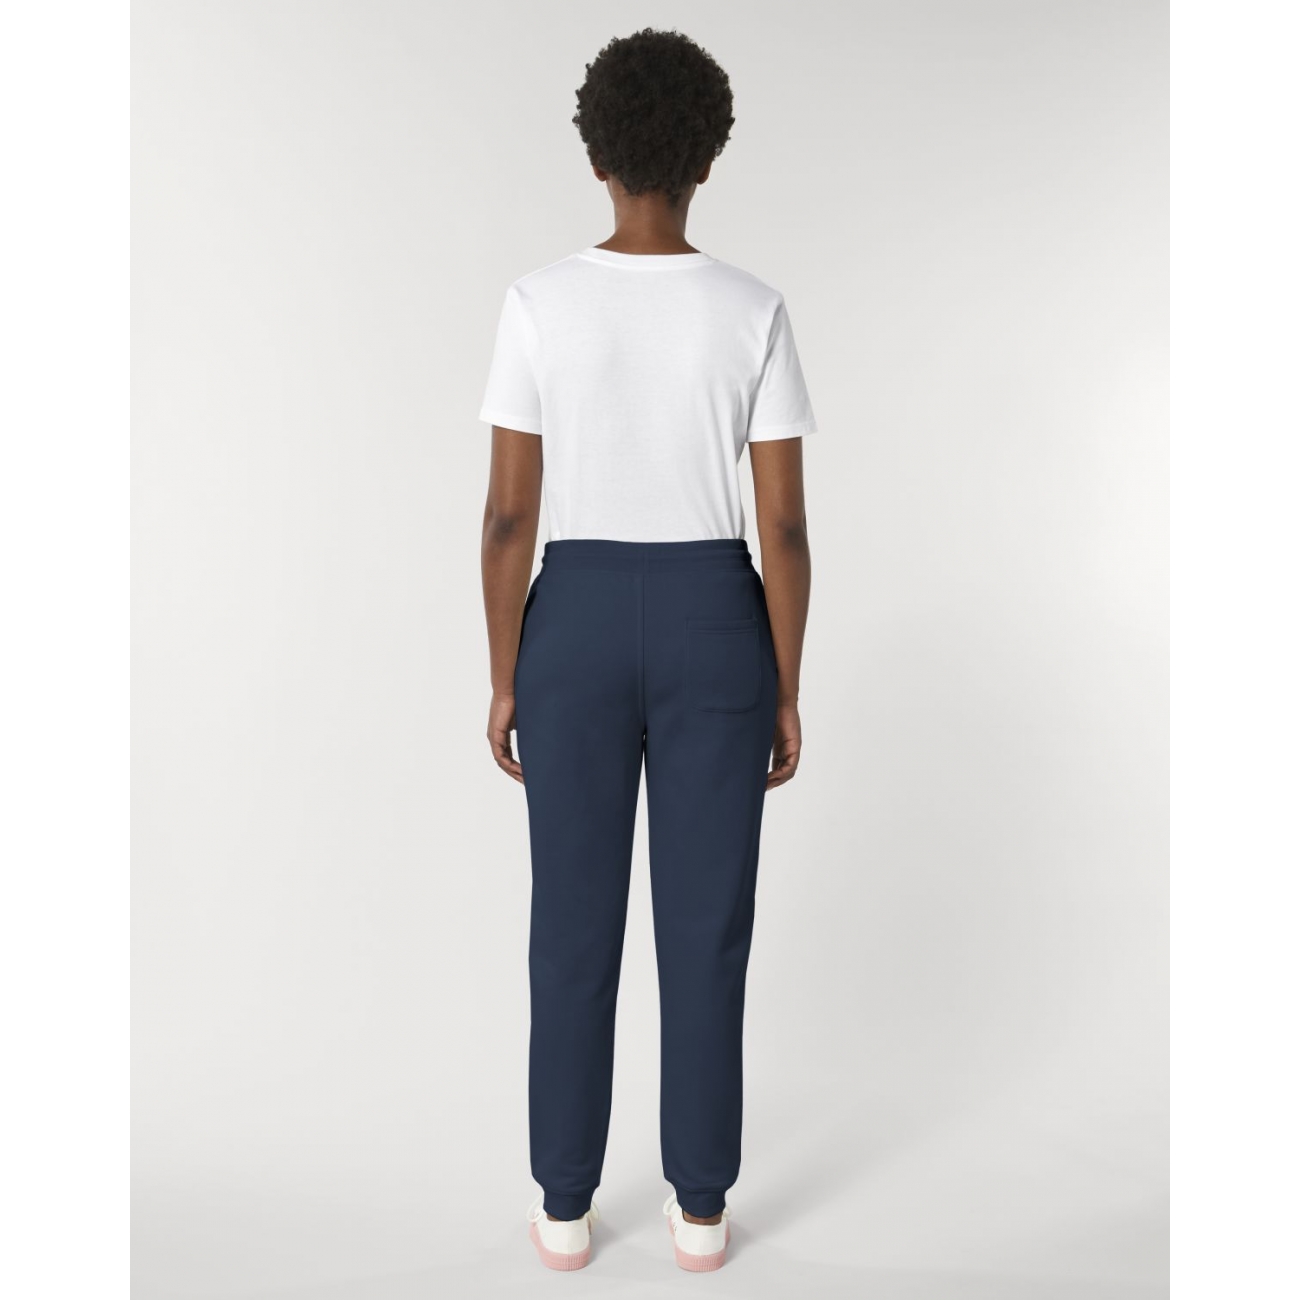 Pantalon de Jogging en coton Bio,Blanc pour Femme - STEEZSTUDIO